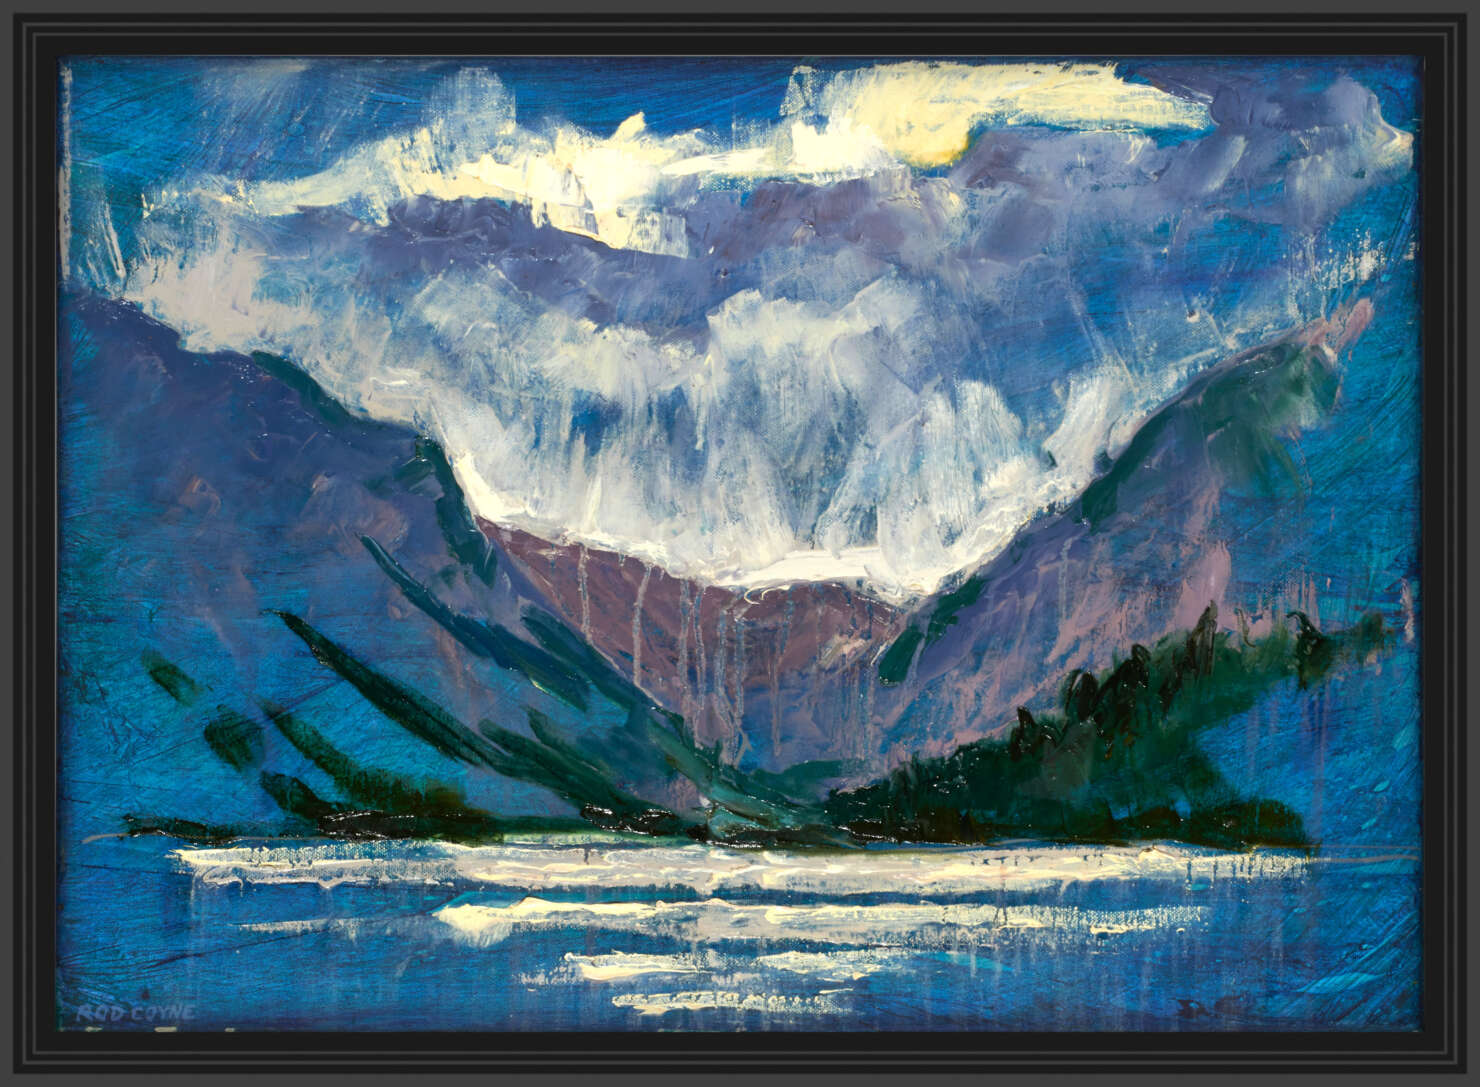 artist rod coyne's painting "glendalough, upper lake" is shown here in a black frame.